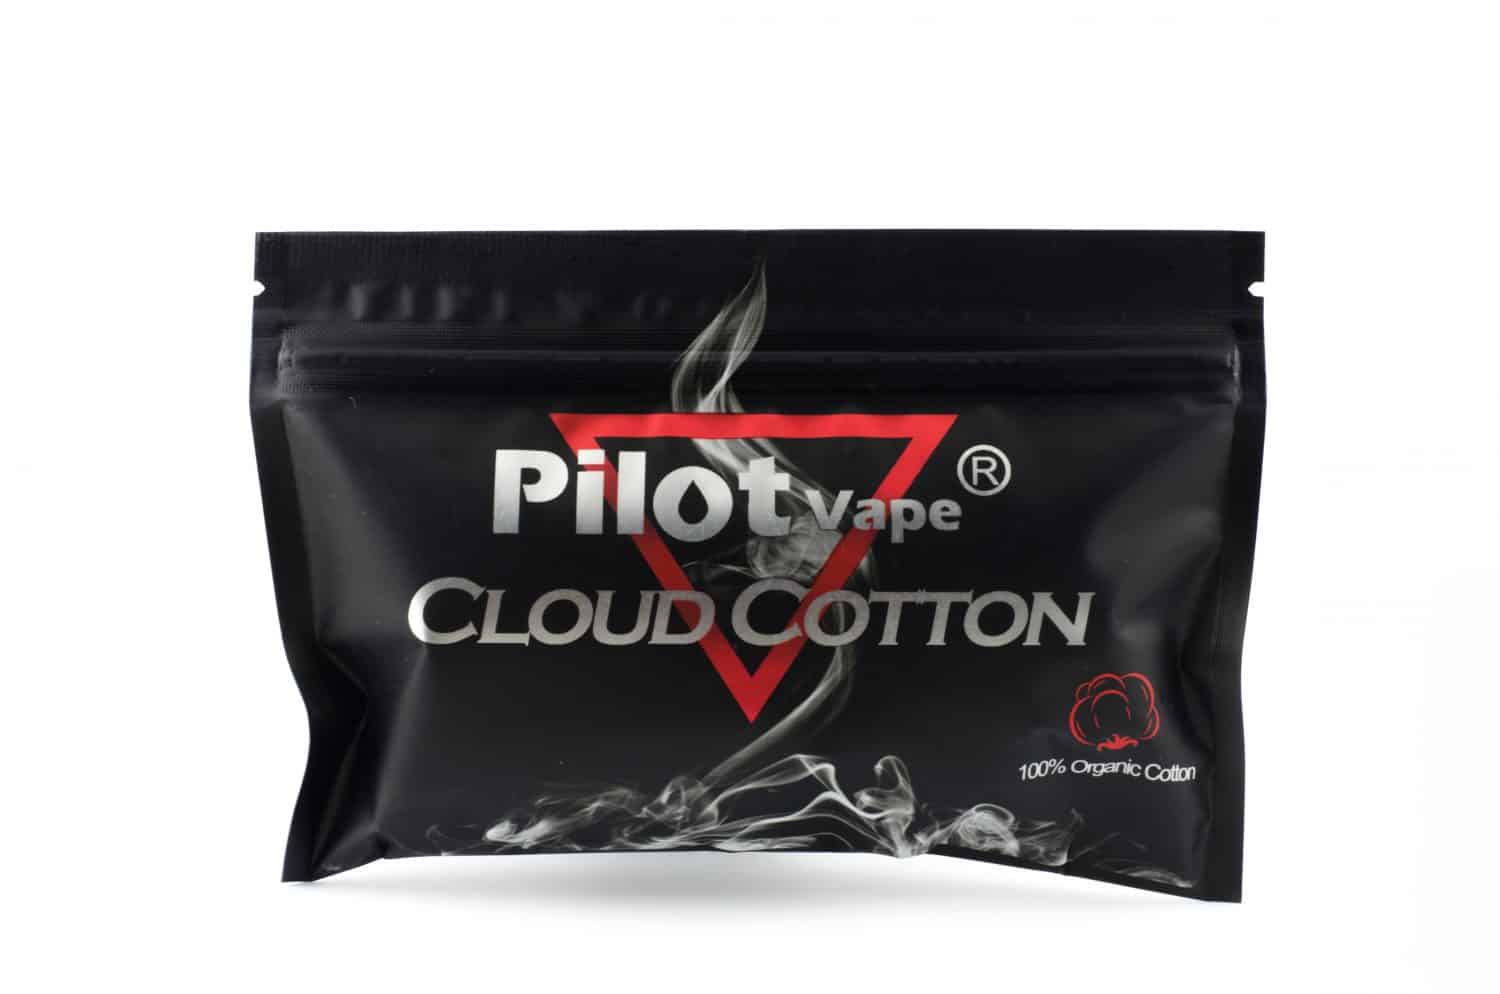 Pilot Vape Cloud Cotton